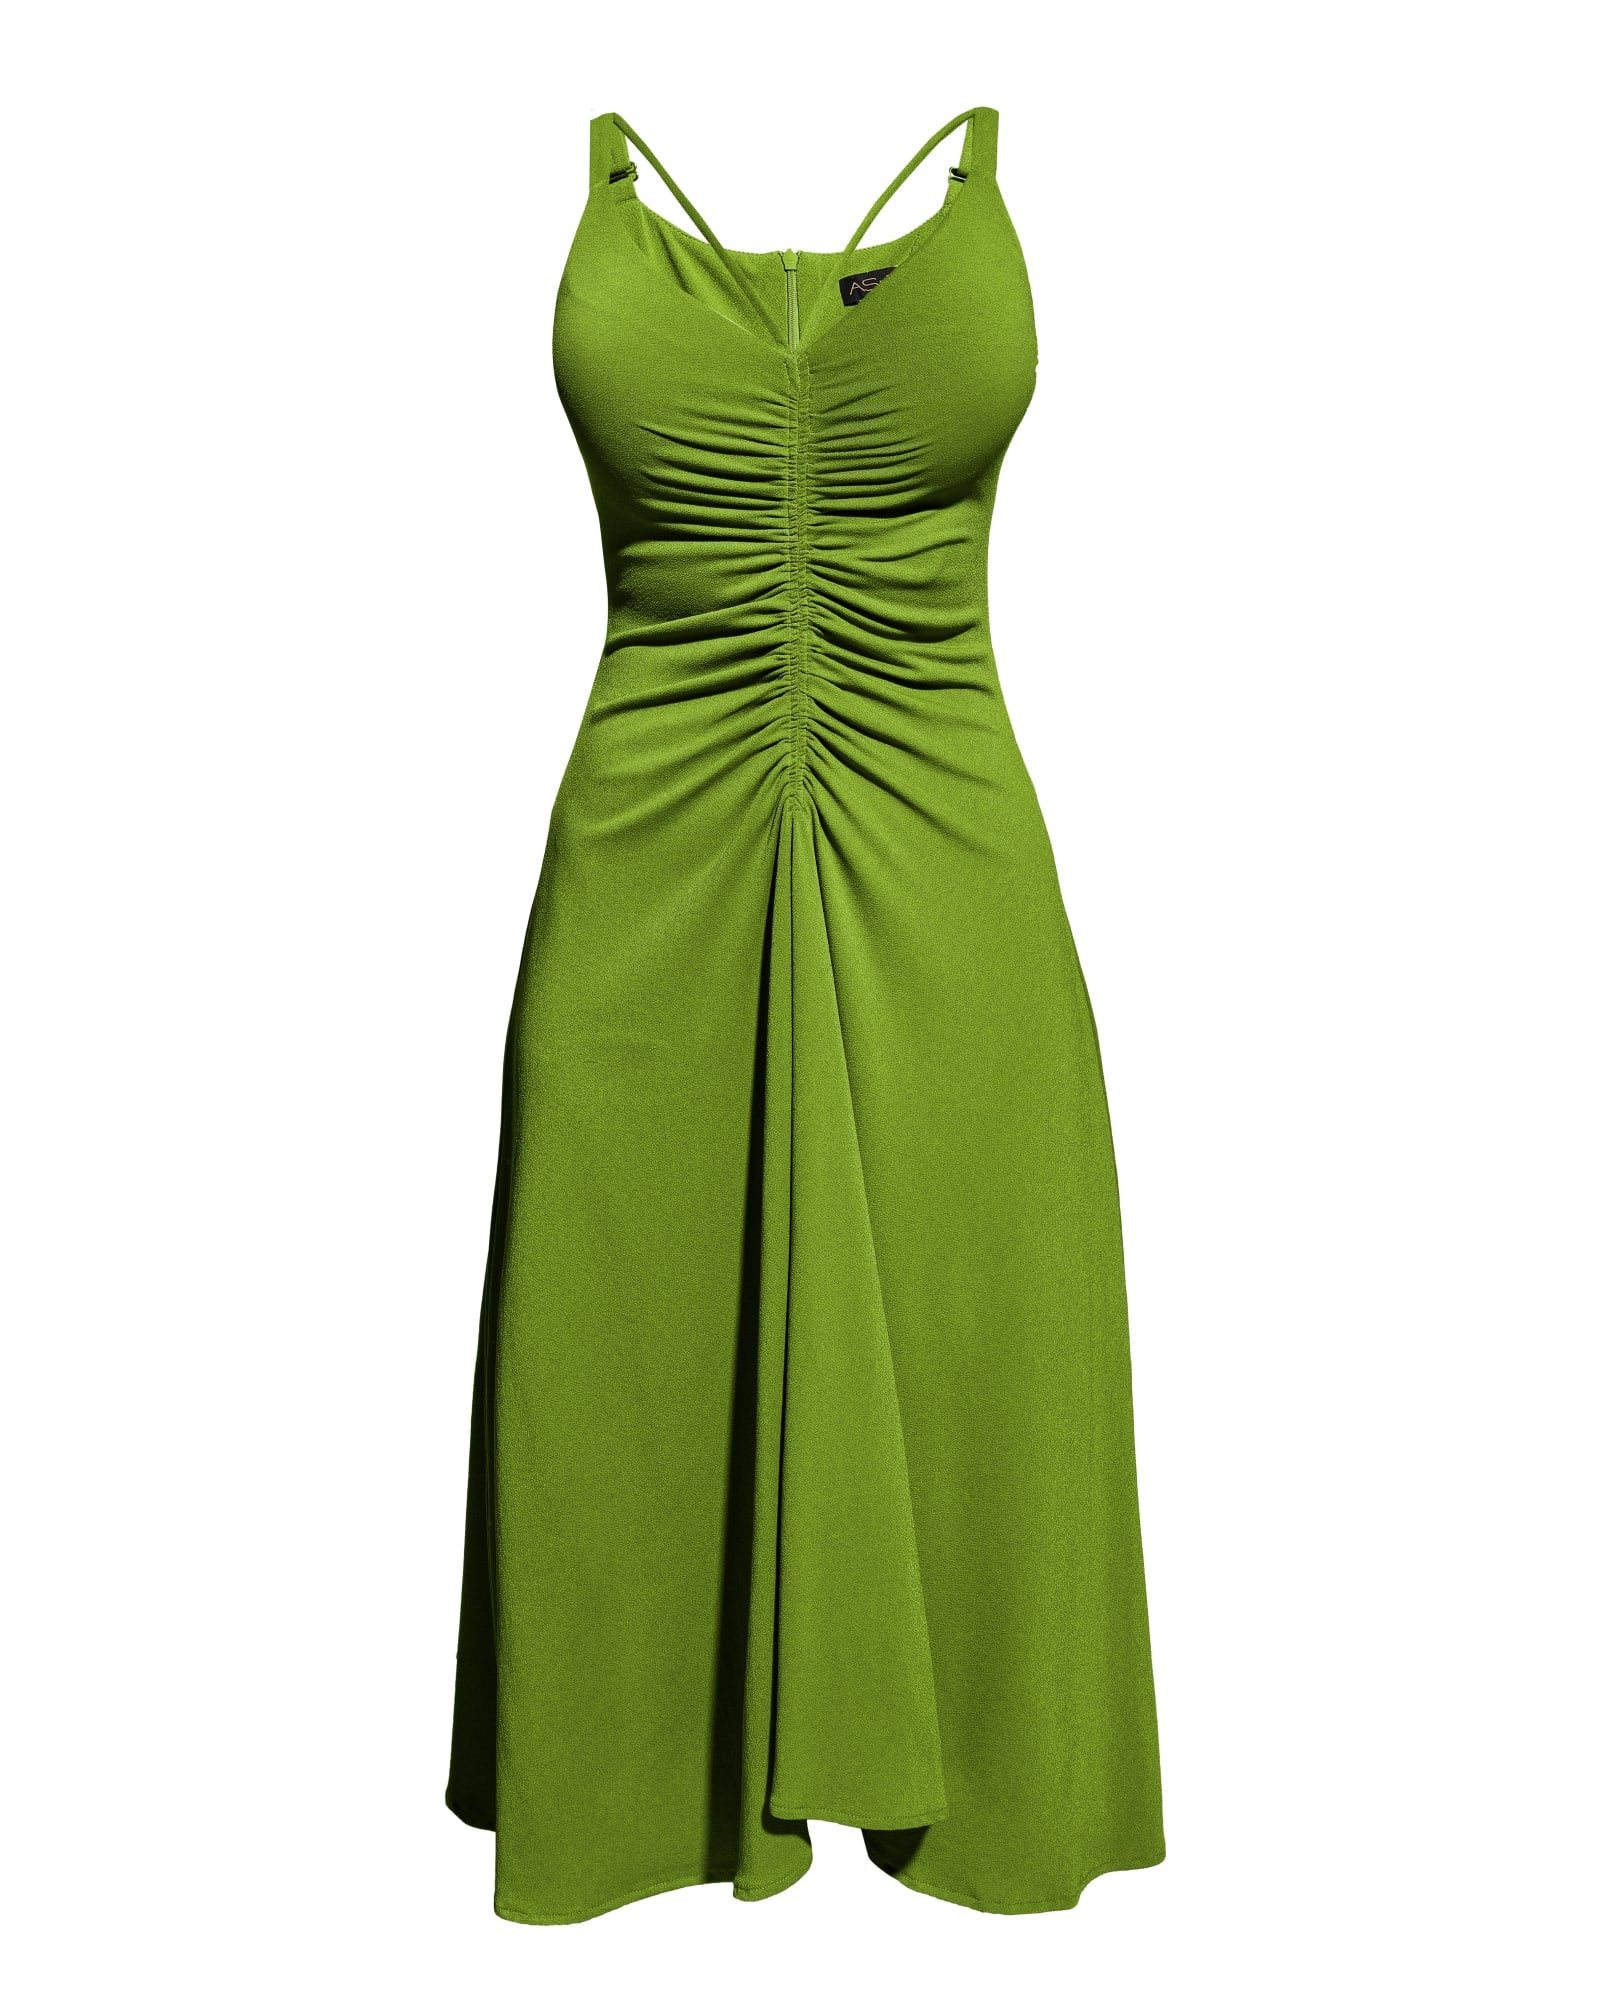 MADDY DRESS | Peridot Green